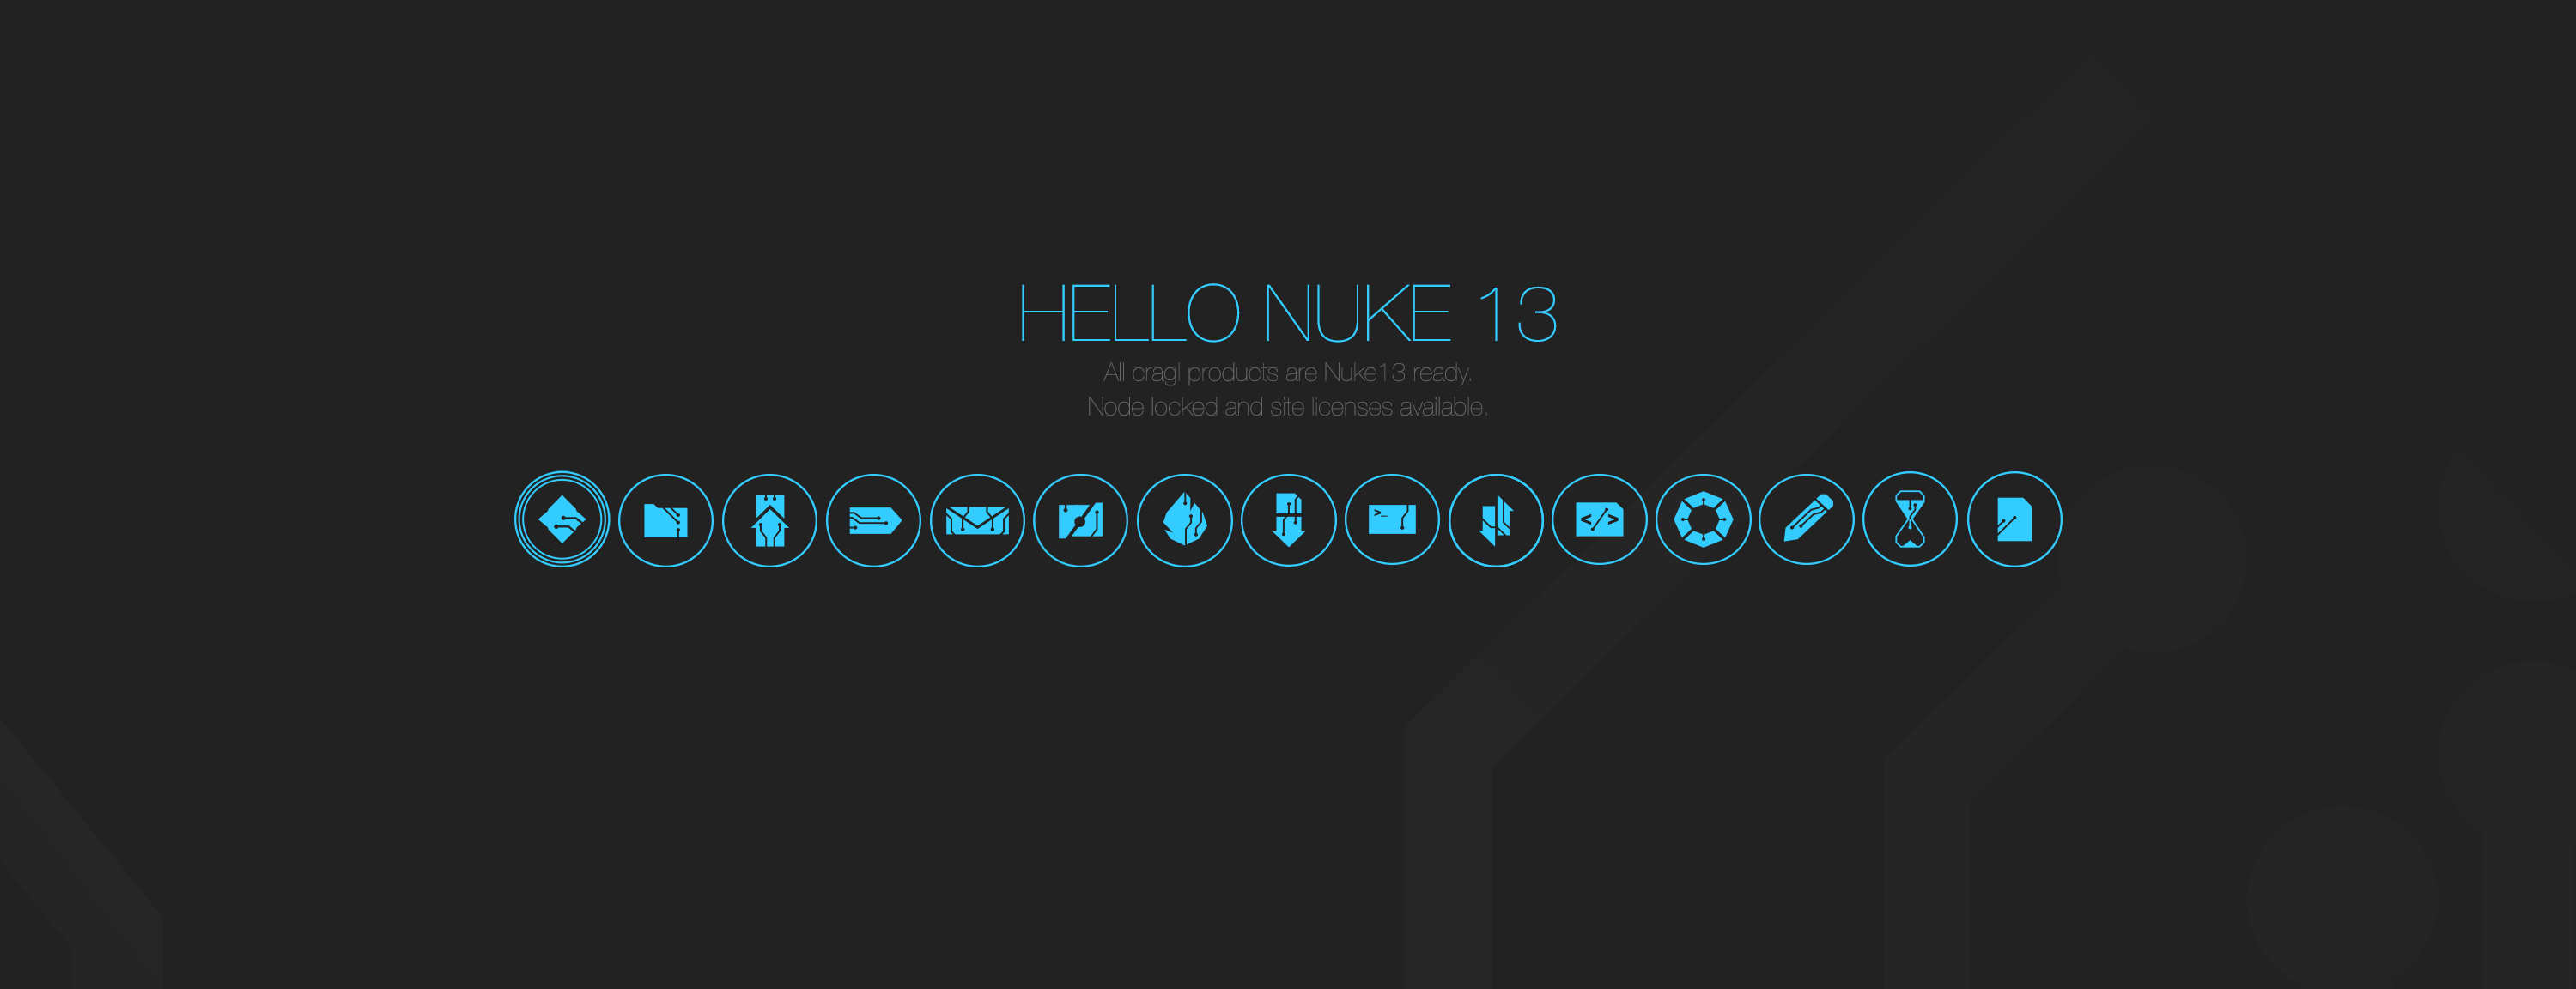 Hello Nuke-13 and Python-3